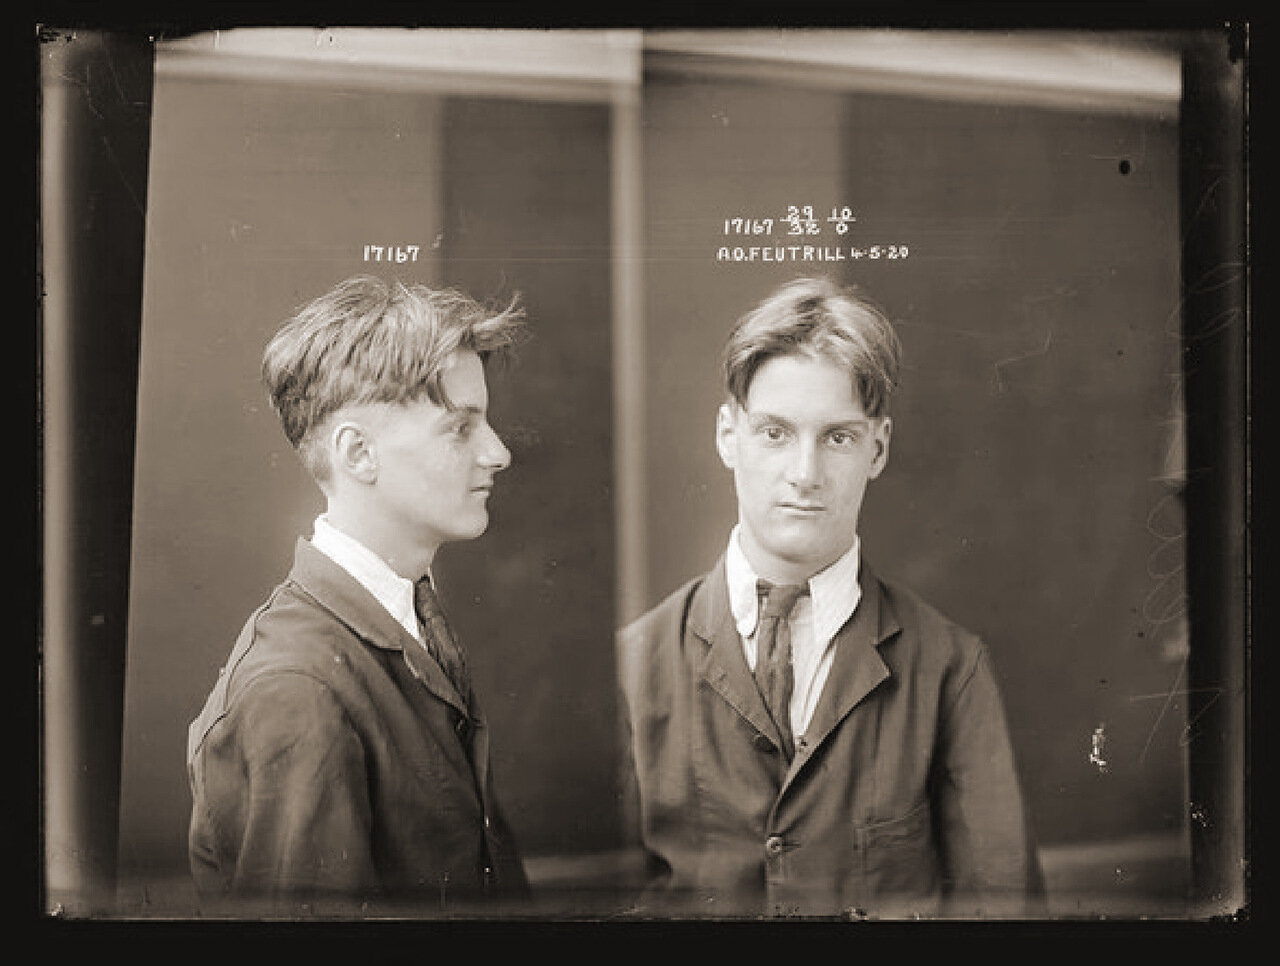 14.Фейтрилл — малолетний вор, взломщик. На момент ареста было 16 лет. После того как отмотал срок попался на краже еще раз в 1928 году.